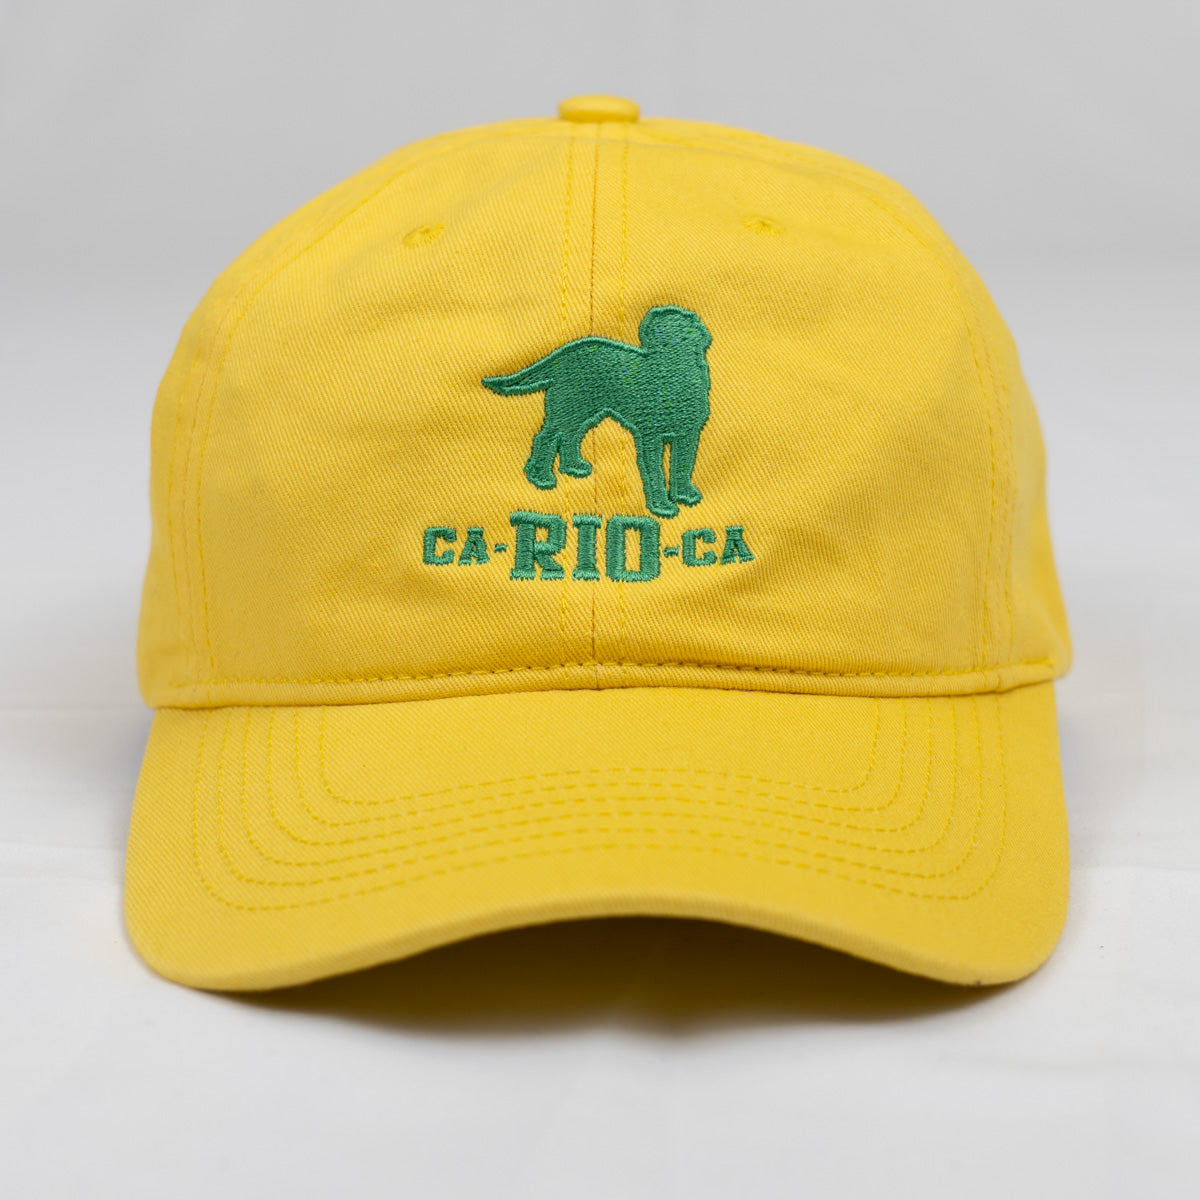 CA-RIO-CA Logotipo Bordado Diseñador Dad Hat - Gorra Trucker Hombre - Múltiples Colores